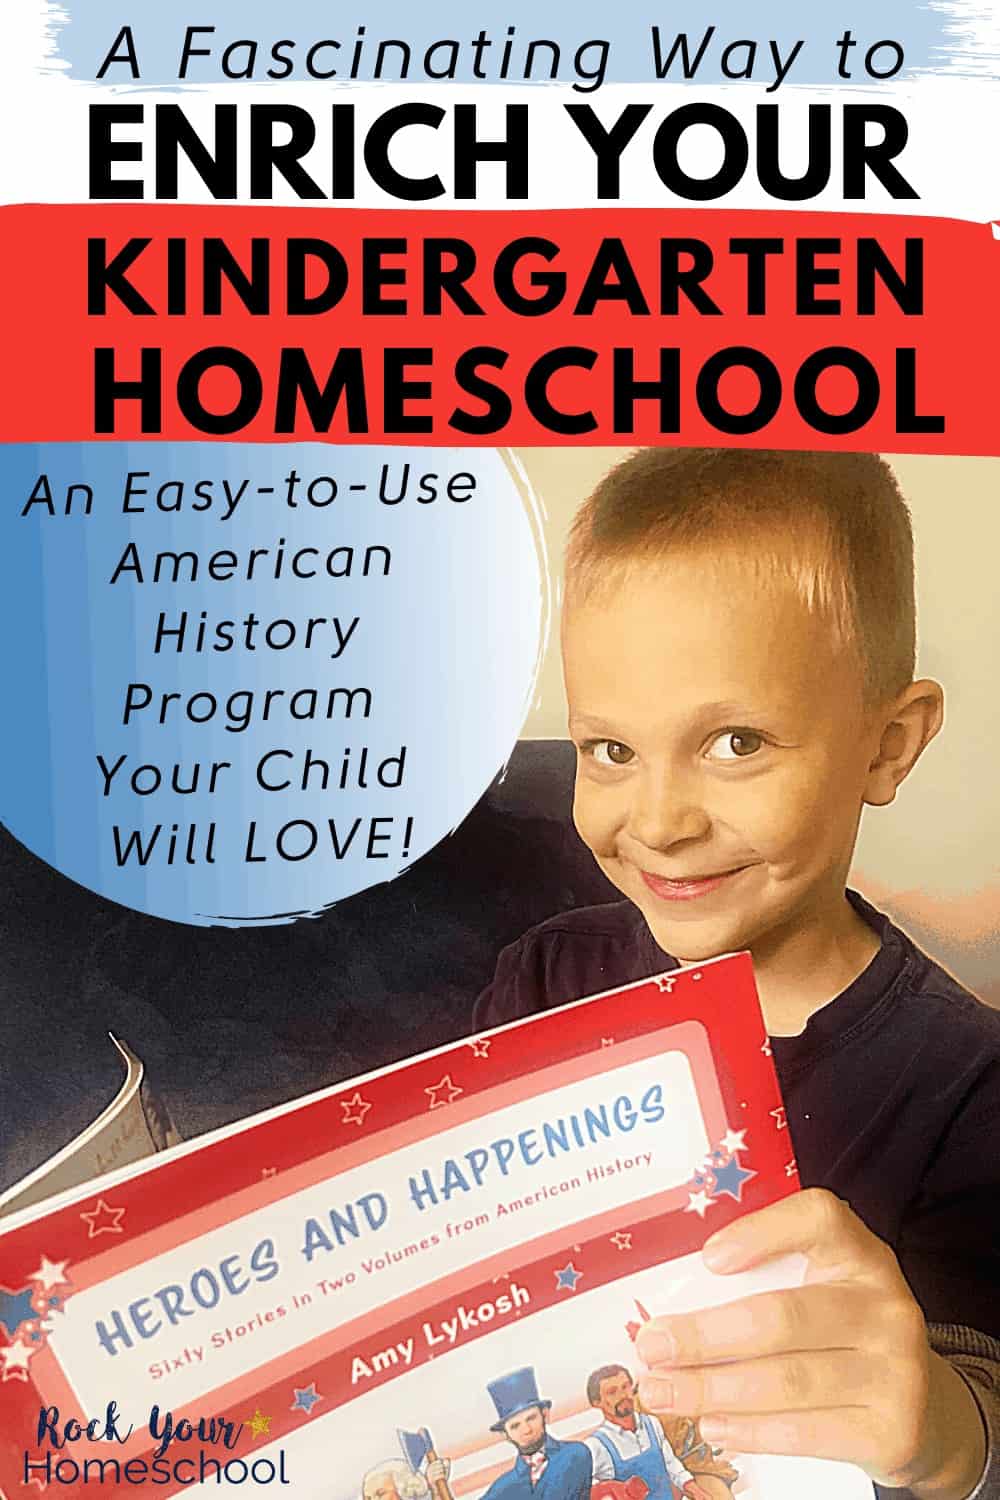 A Fascinating Way to Enrich Your Kindergarten Homeschool